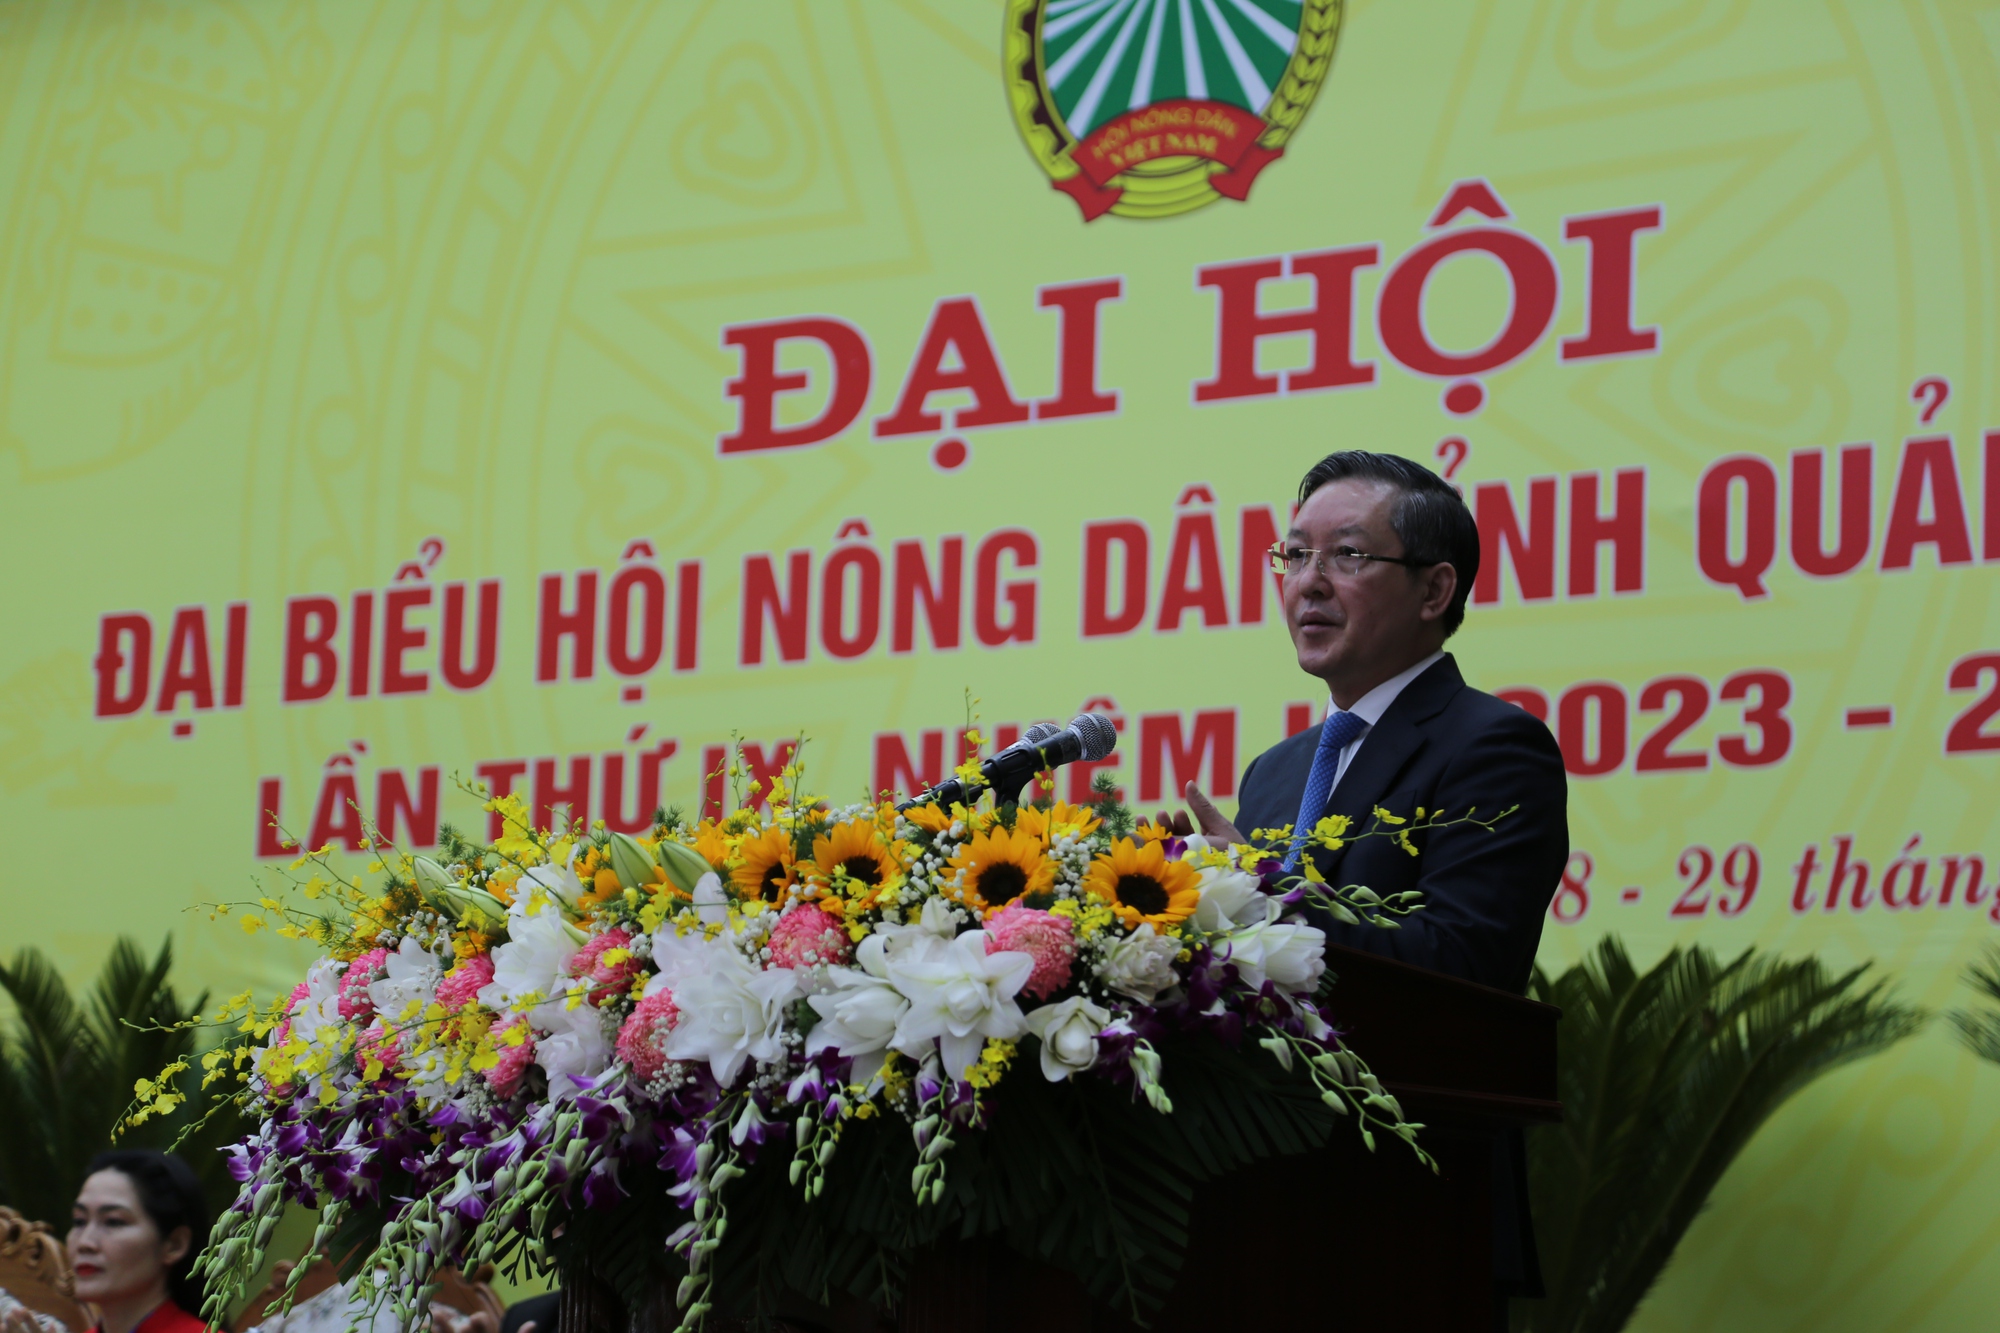 Chủ tịch BCH TƯ Hội NDVN Lương Quốc Đoàn: Hội Nông dân Quảng Nam đã củng cố và nâng cao vị thế   - Ảnh 1.